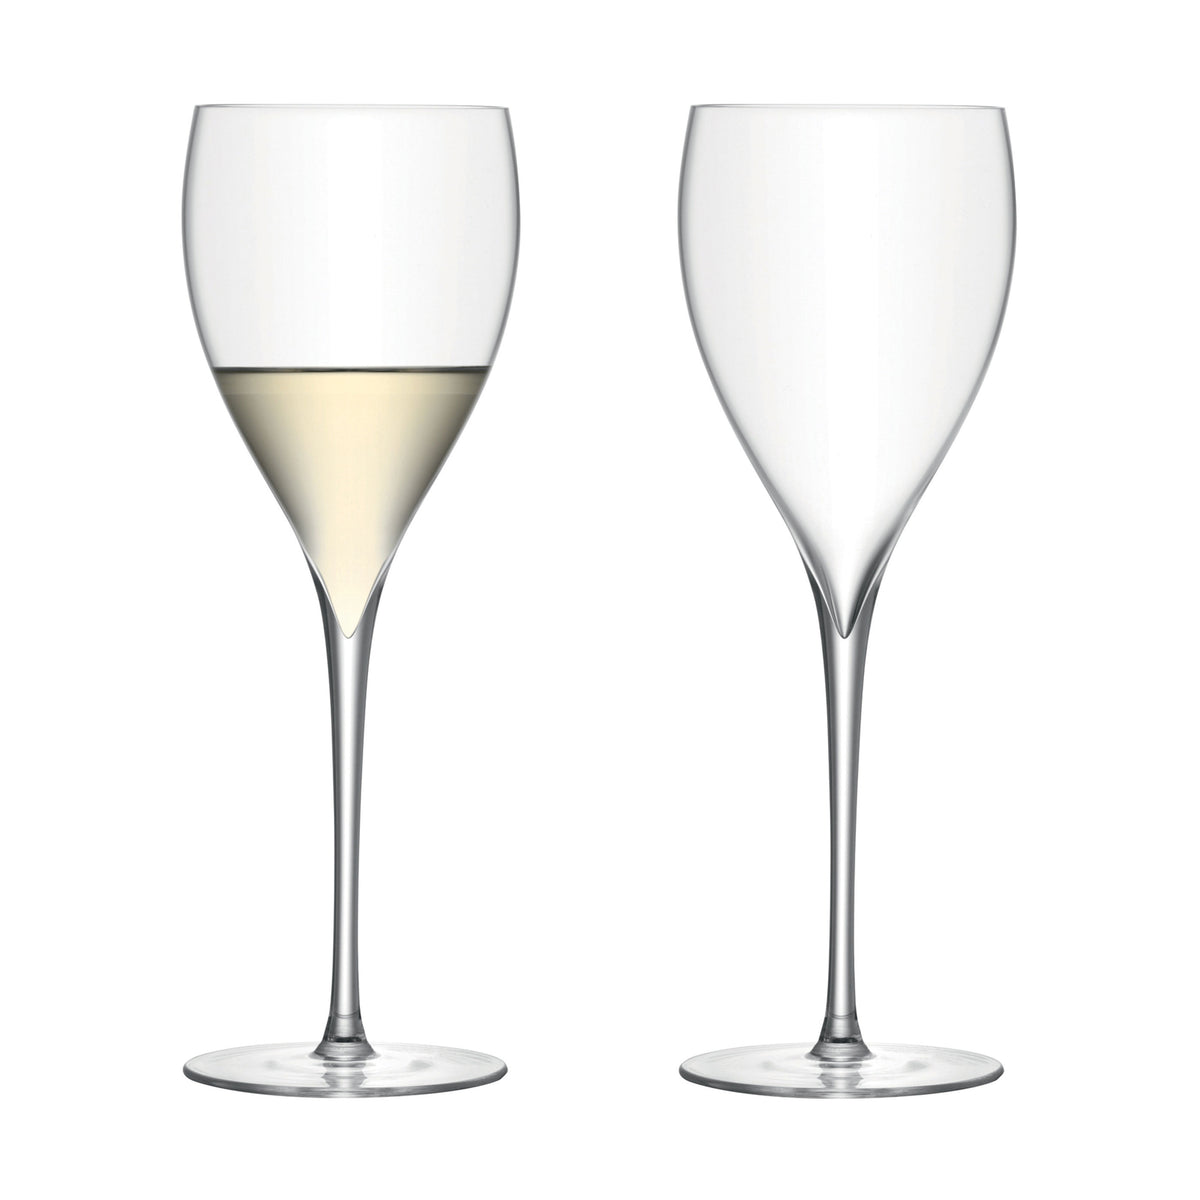 Savoy White Wine Glasses 12oz, Set of 2 (D)